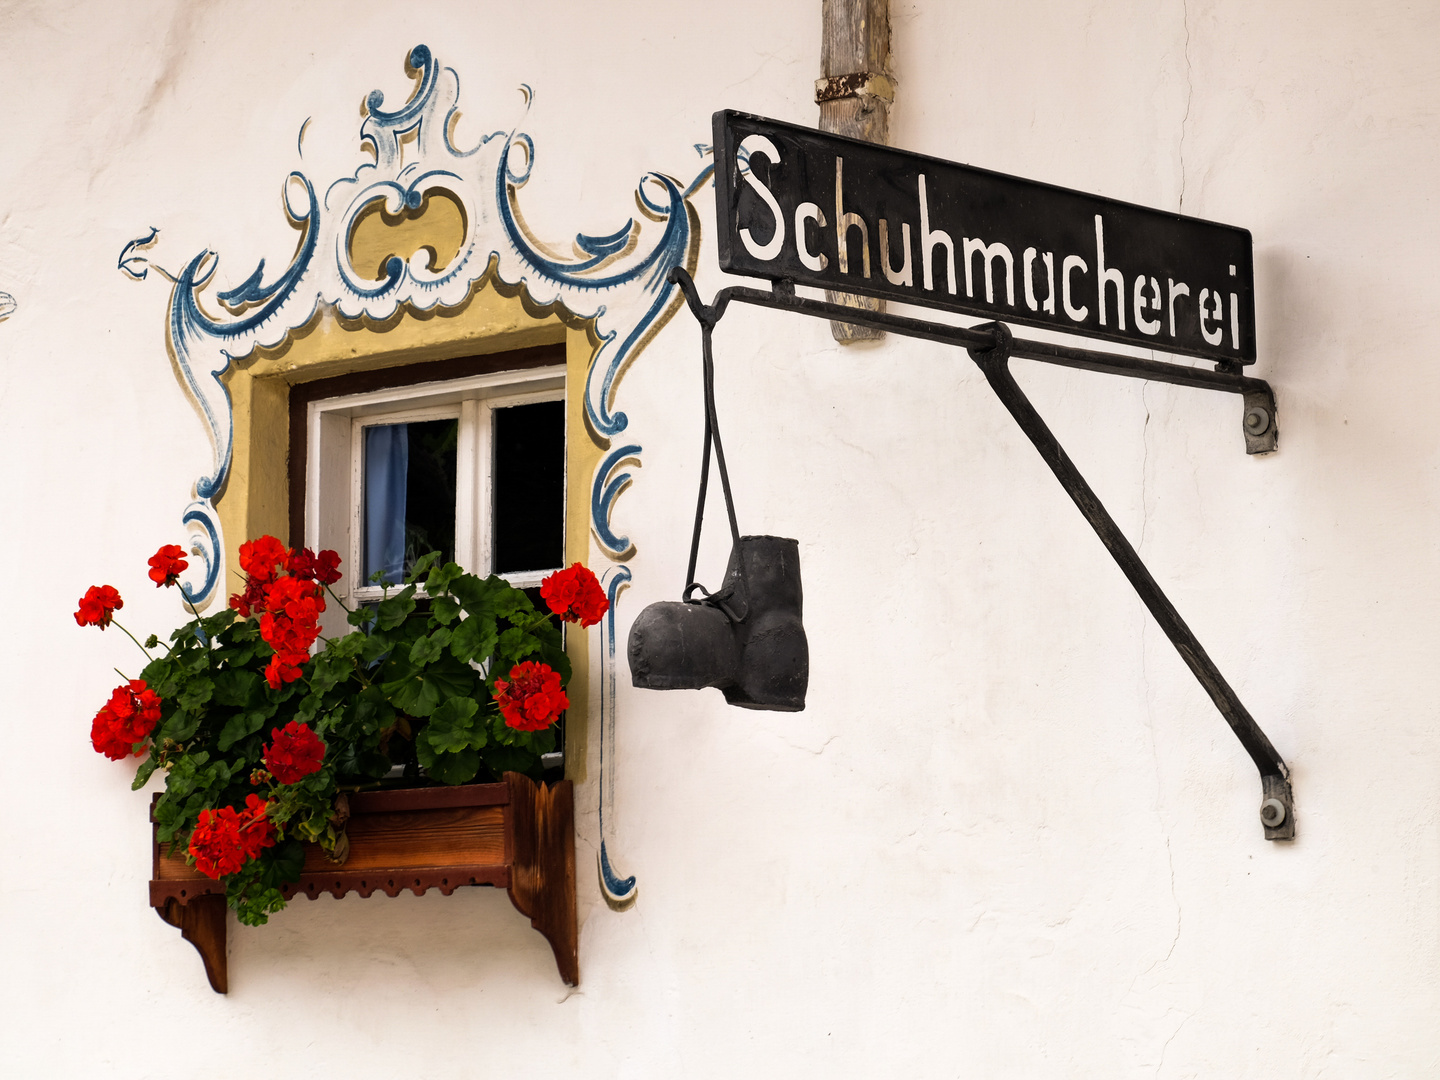 Schuhmacher in Tirol